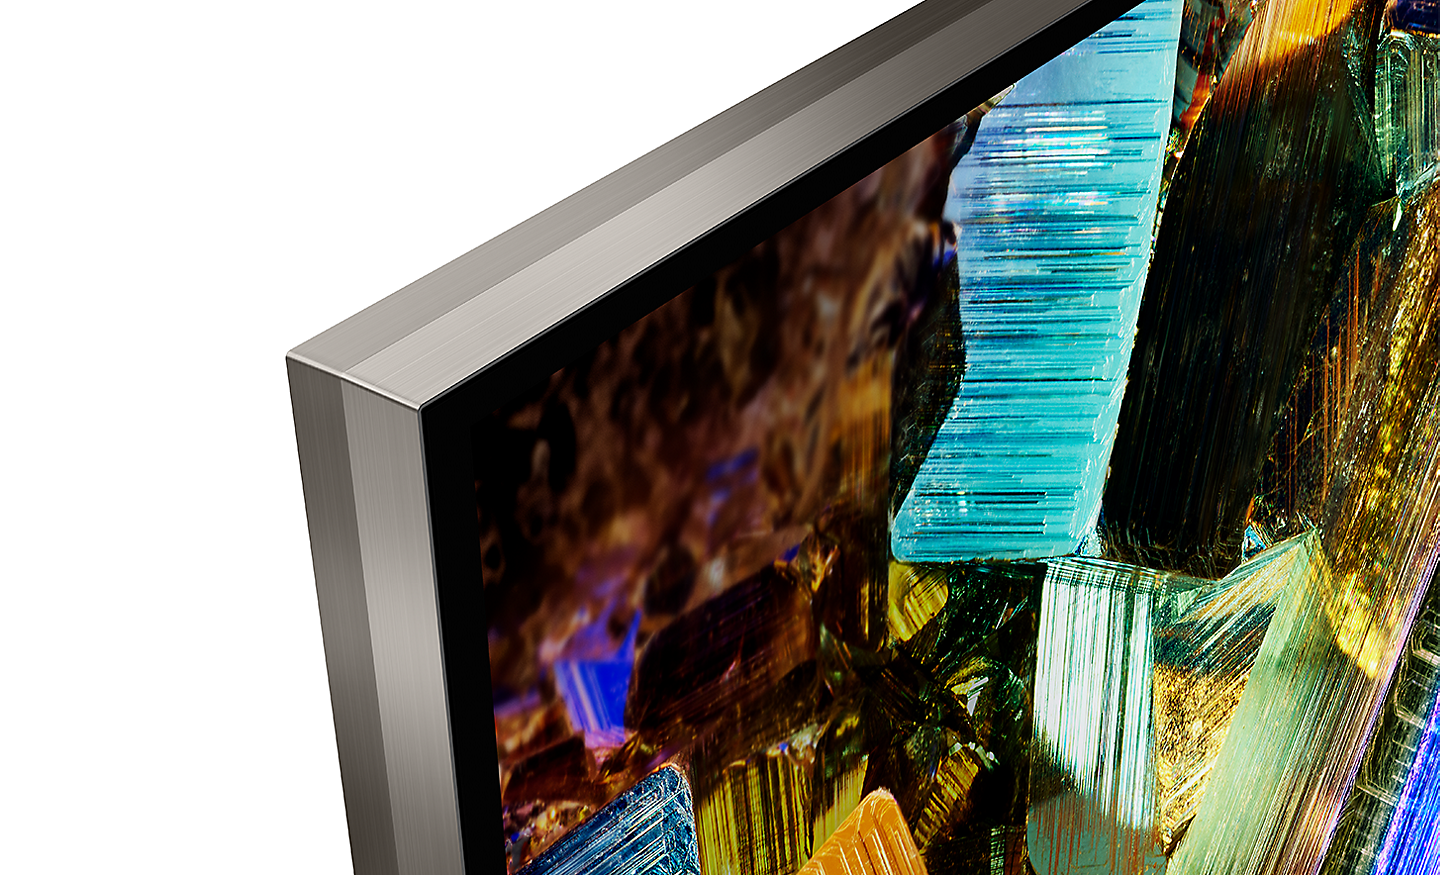 تفاصيل زاوية تلفزيون BRAVIA تعرض تصميمًا بحواف سلسة بدون إطار تقريبًا ولقطة شاشة لصناديق رقائق ملونة